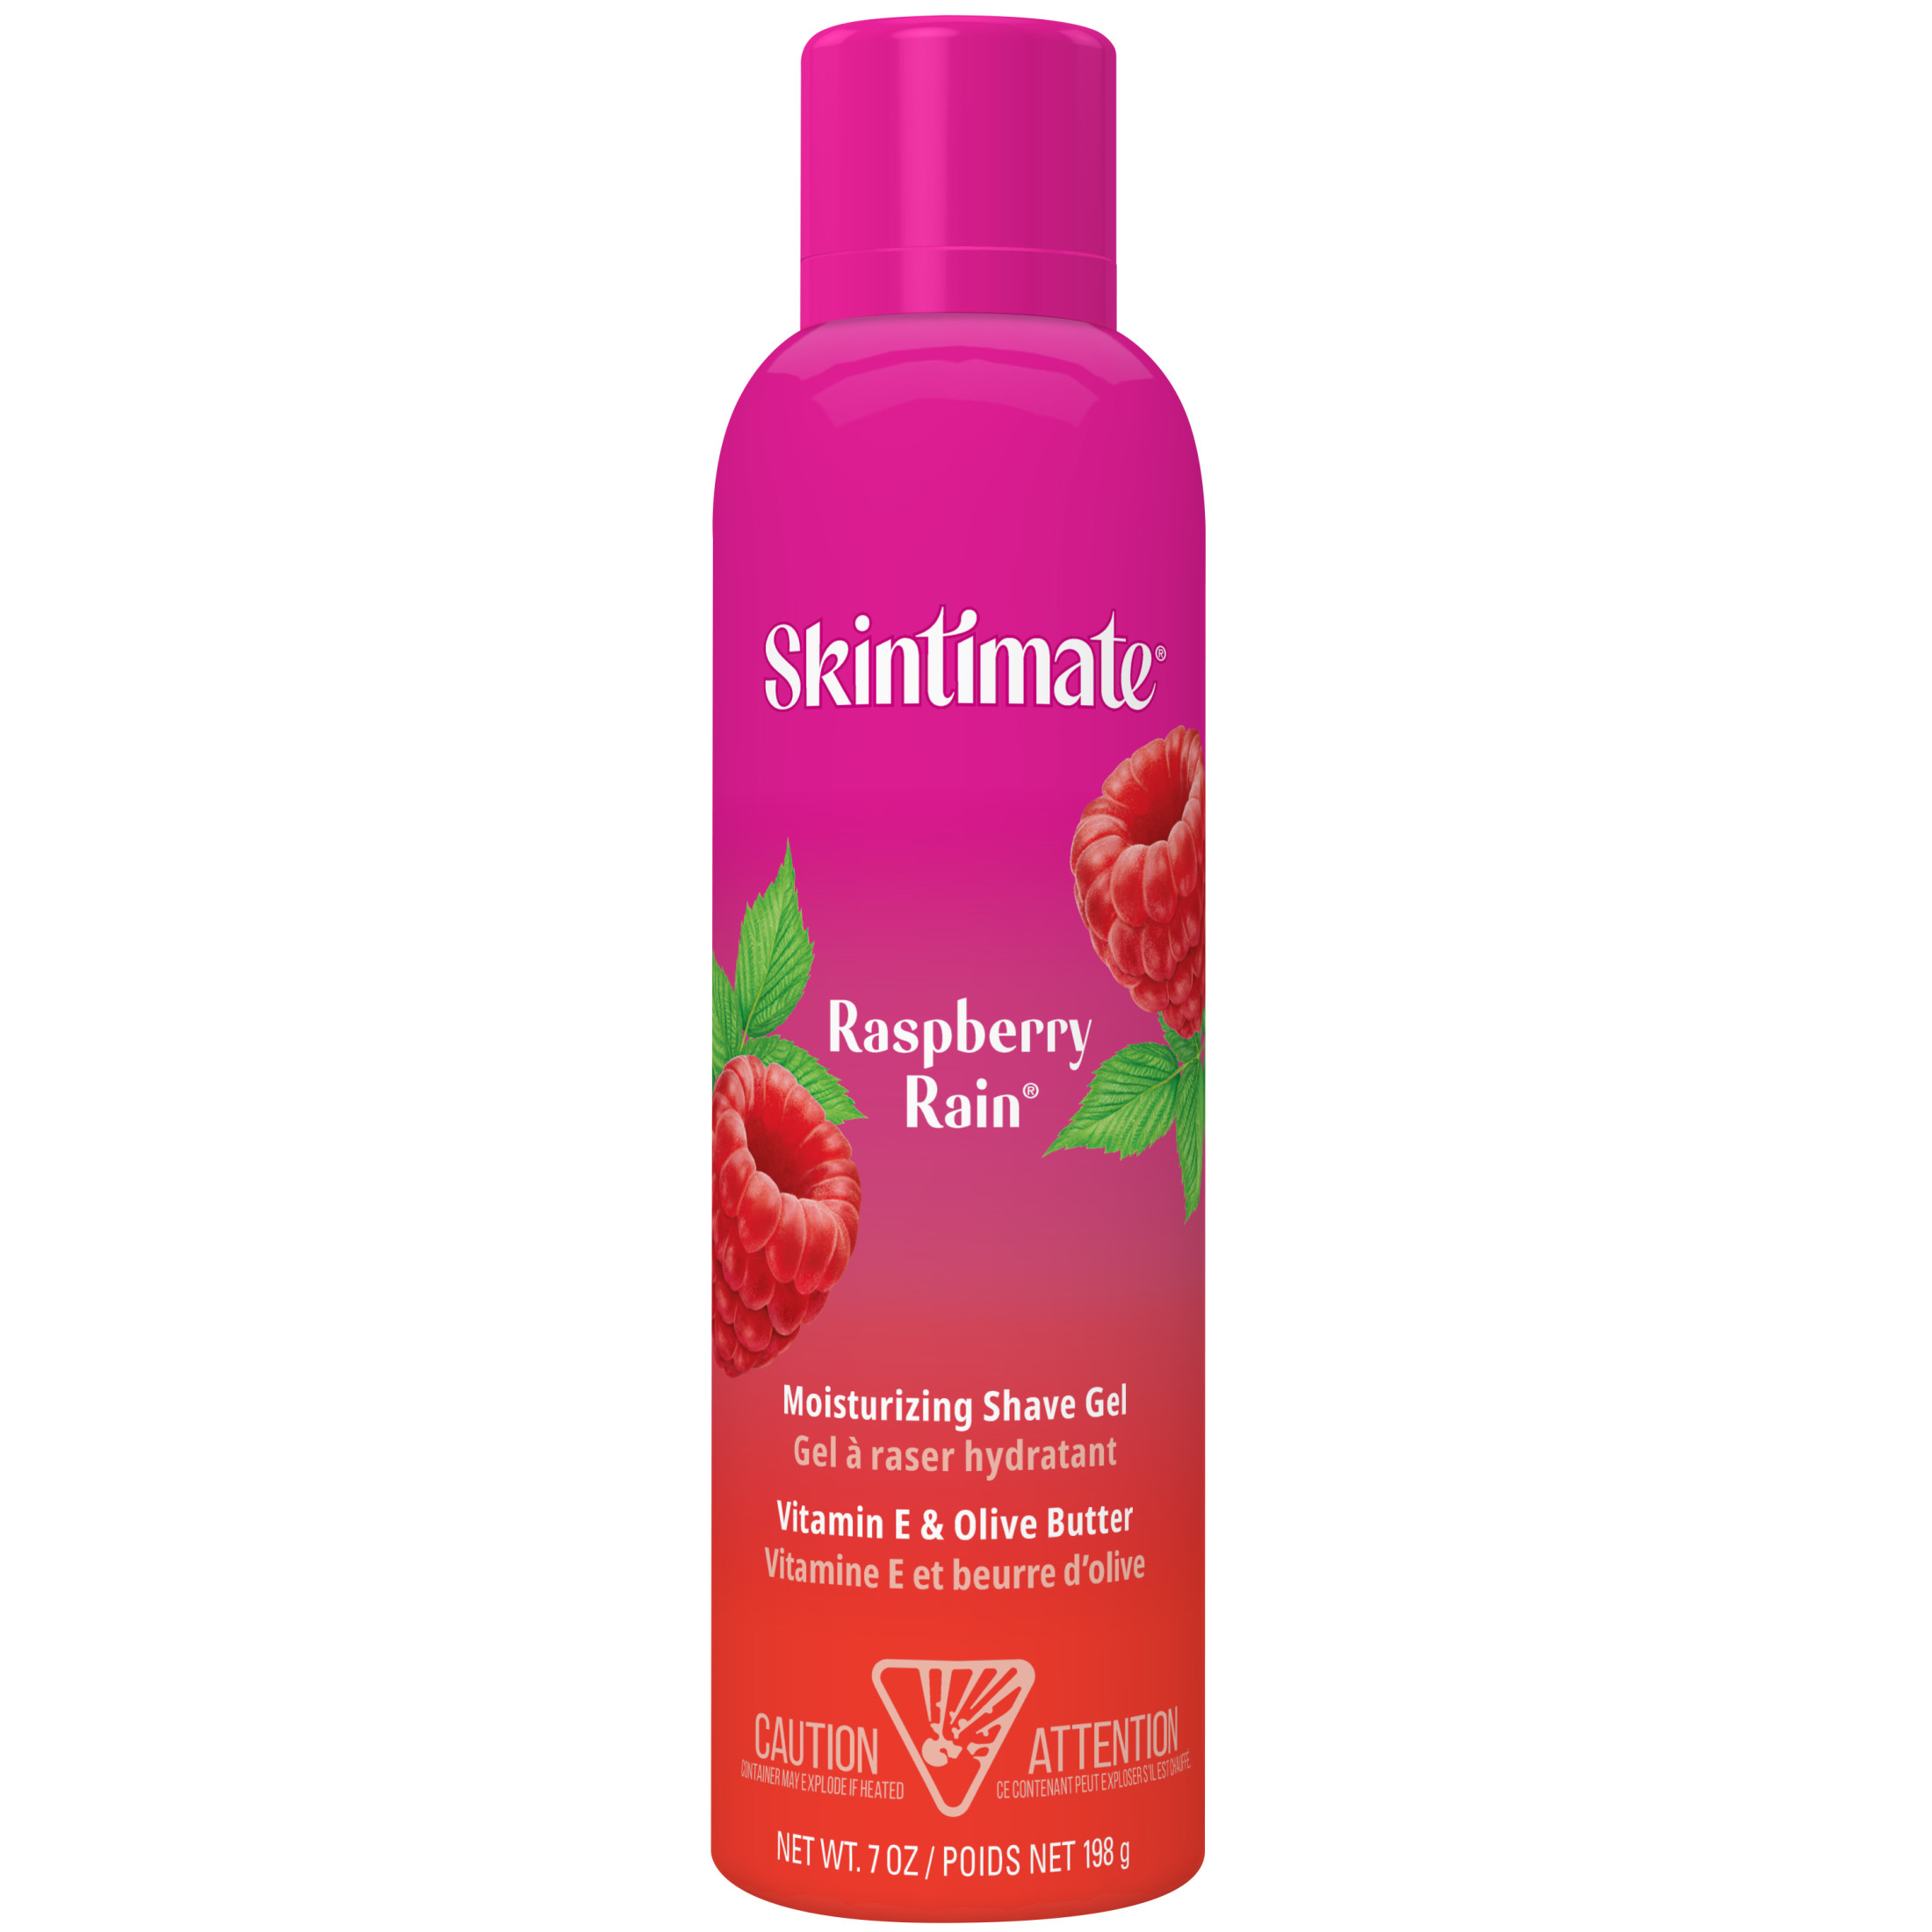 Skintimate Raspberry Rain Shave Gel for Women, Moisturizing Shaving Cream, 7 oz - image 1 of 10